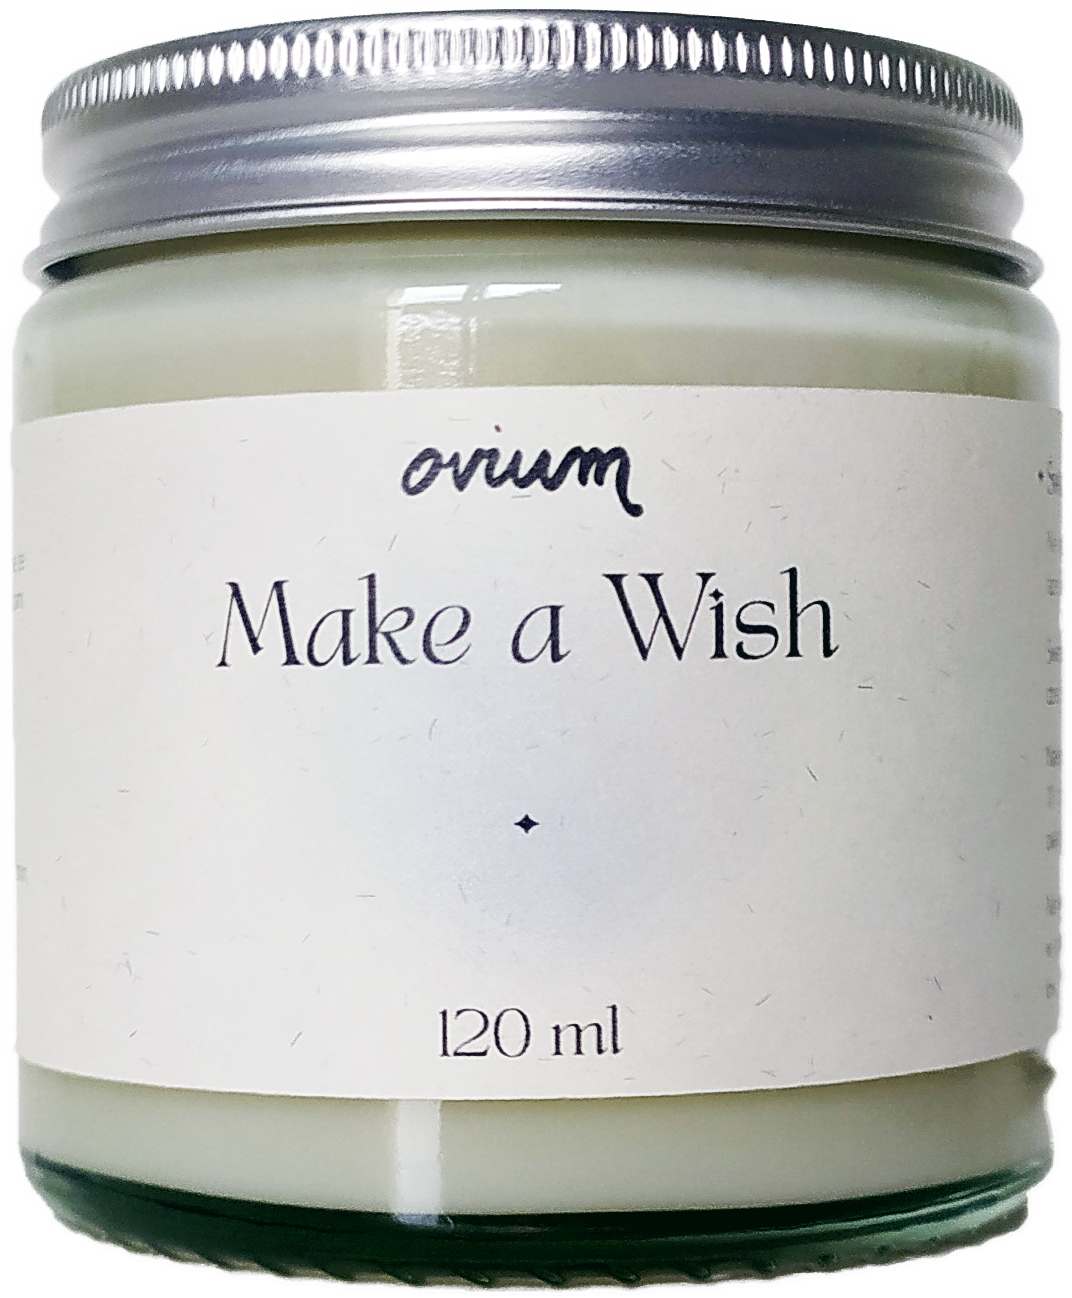 make a wish ovium candle easydoor shop uk best deals png